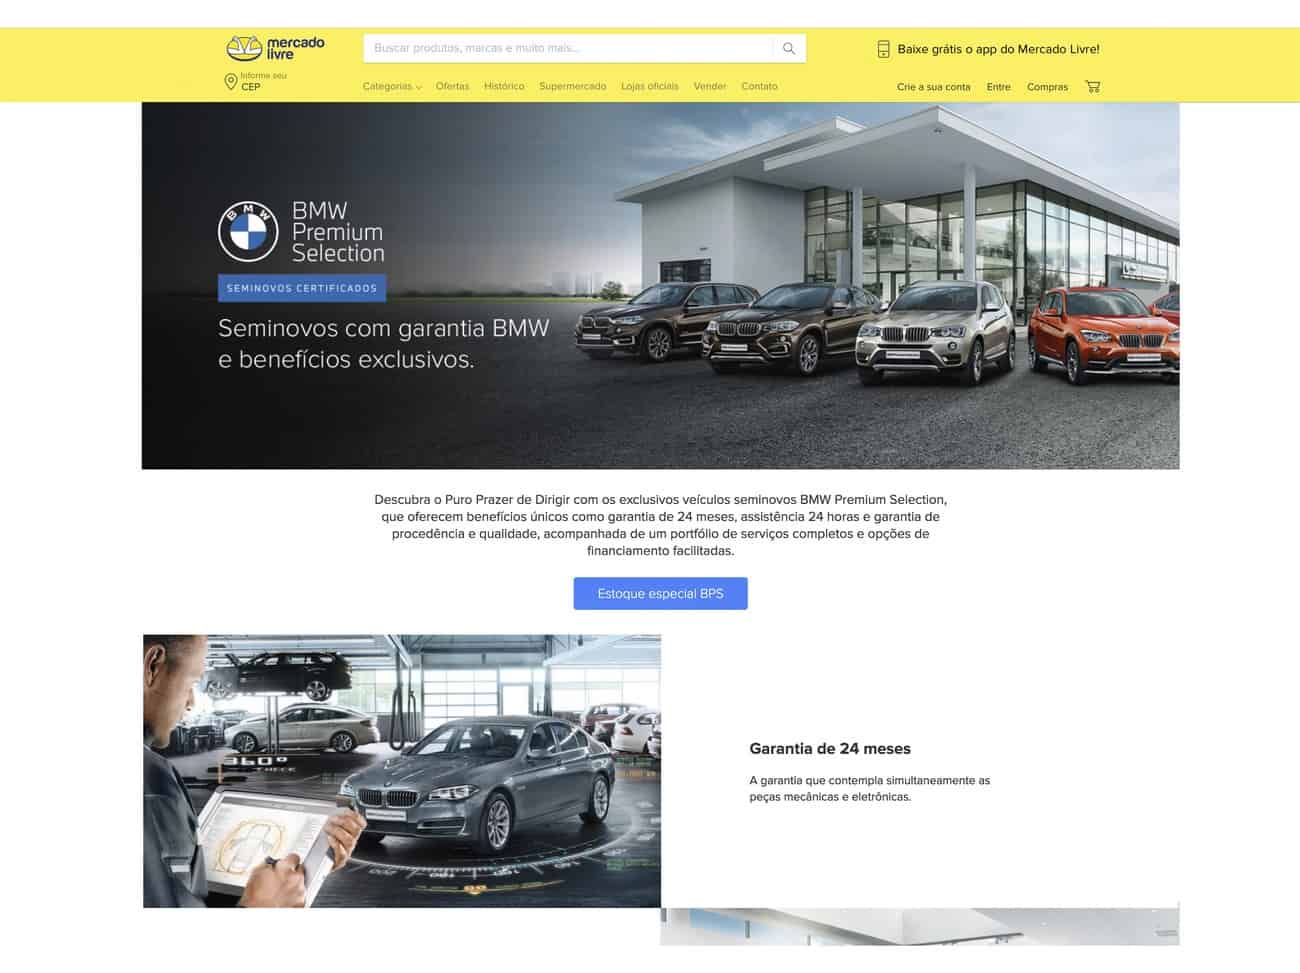 Imagem da loja virtual da BMW na página do Mercado Livre